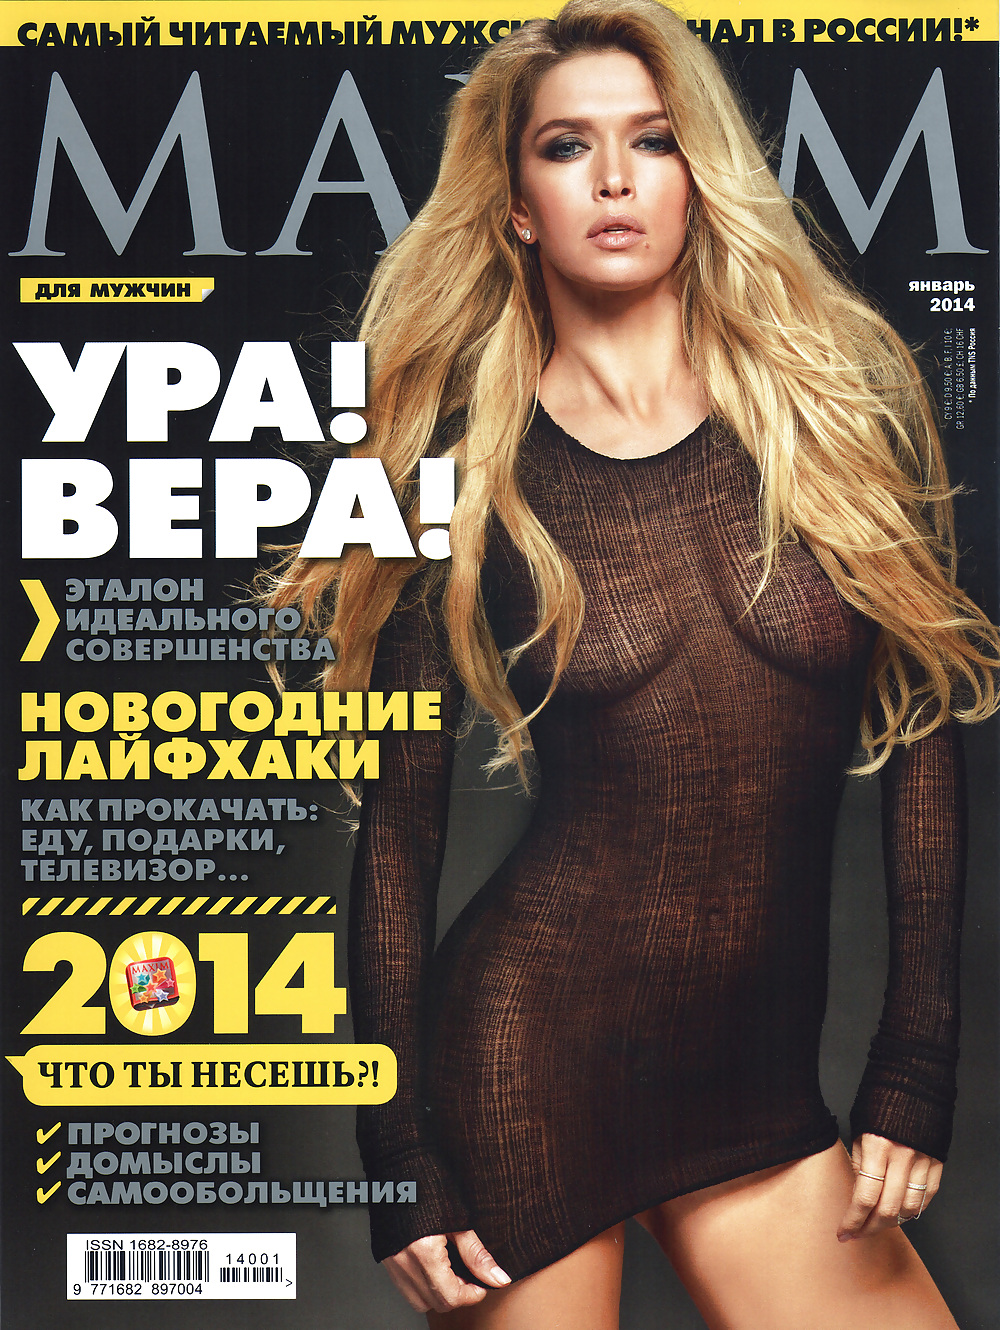 Vera Brezhneva for Maxim 2014 #22990850